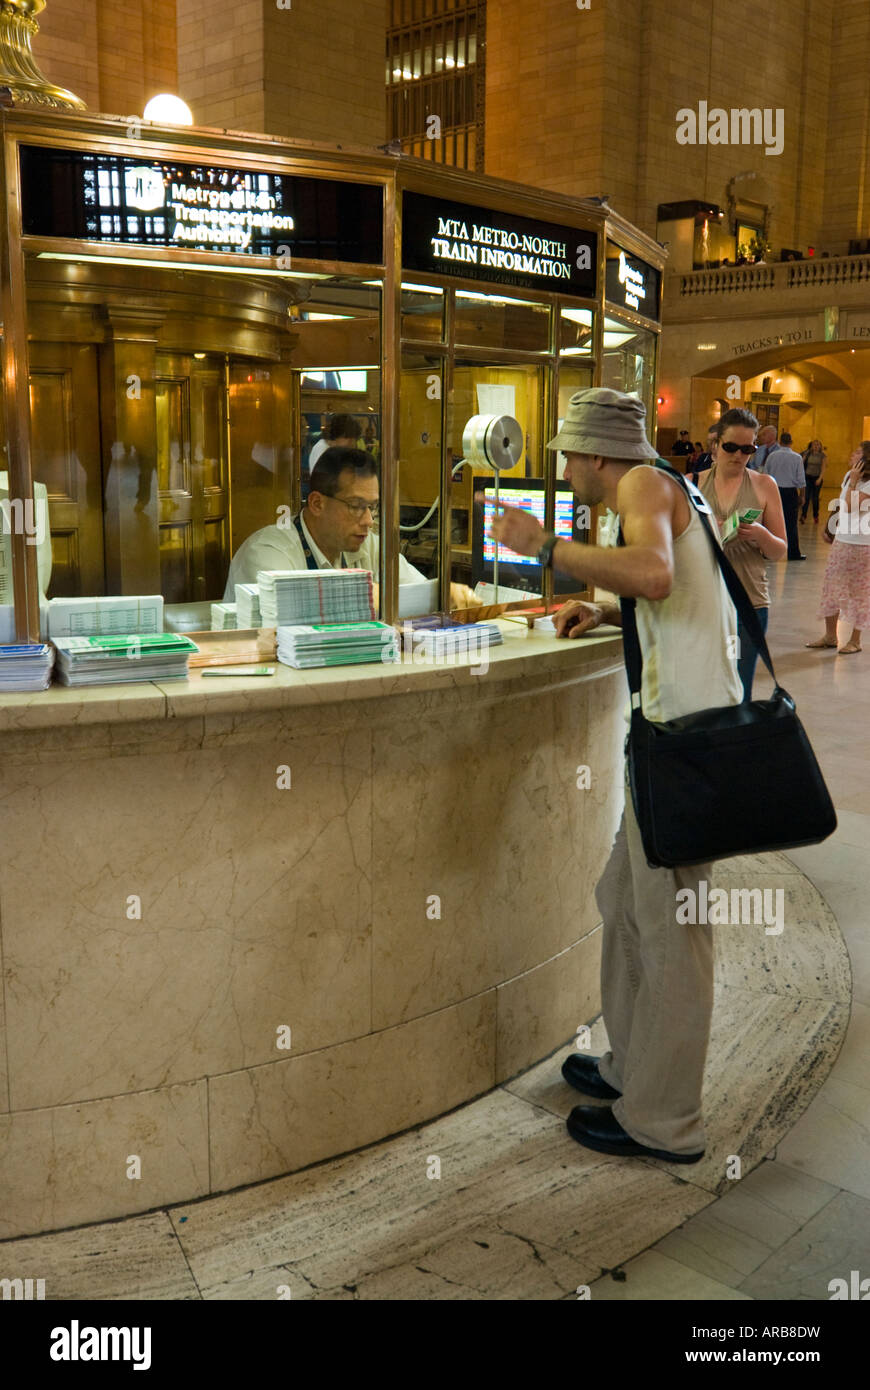 Punto di informazione e alla Grand Central Station di New York City, Stati Uniti d'America Foto Stock